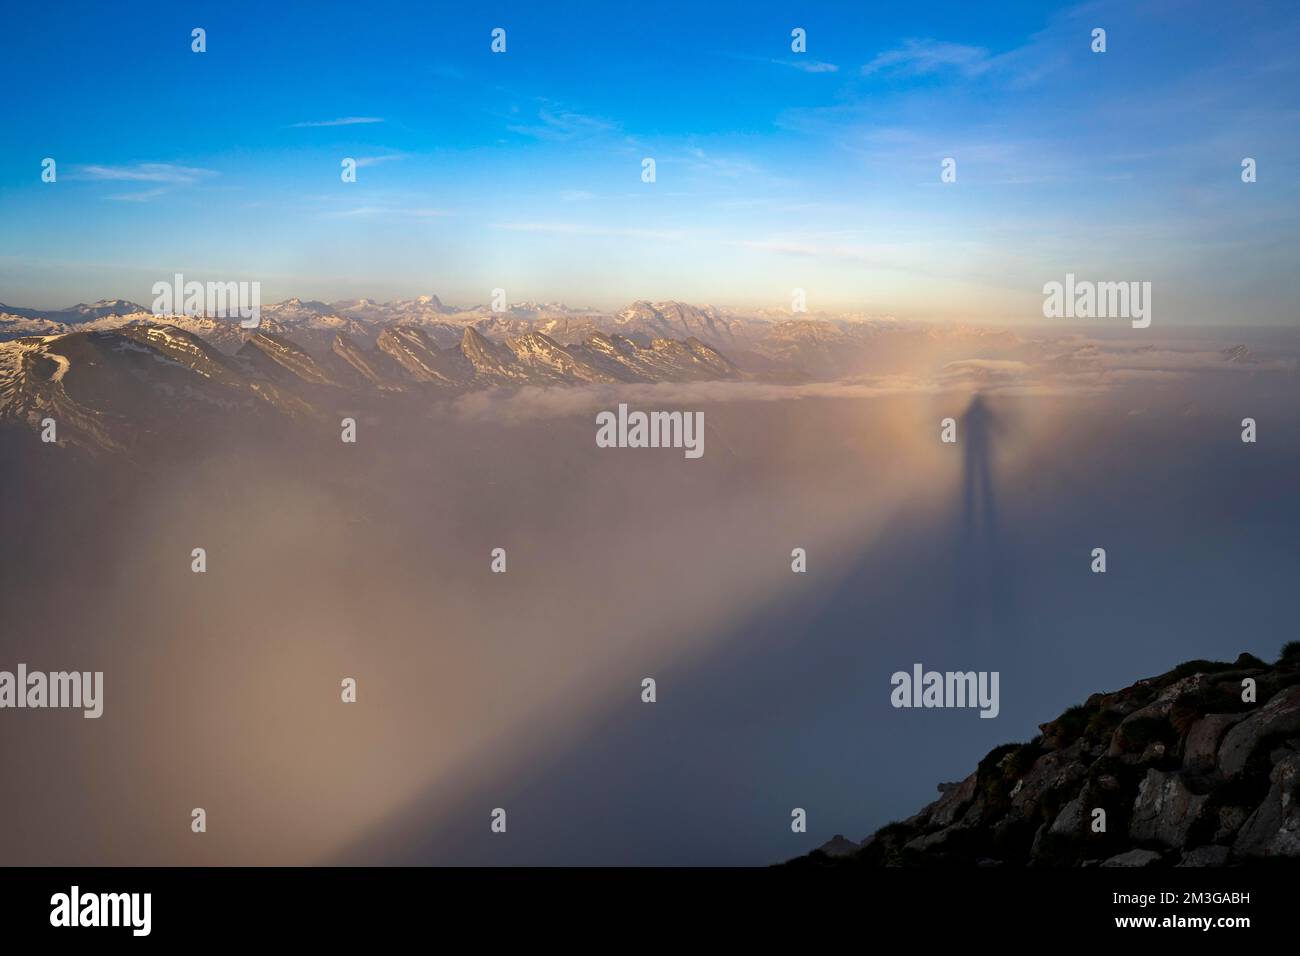 Ombra proiettata dal fotografo nella nebbia, sullo sfondo le vette del Churfirsten, Wildhaus, Appenzell, Svizzera Foto Stock